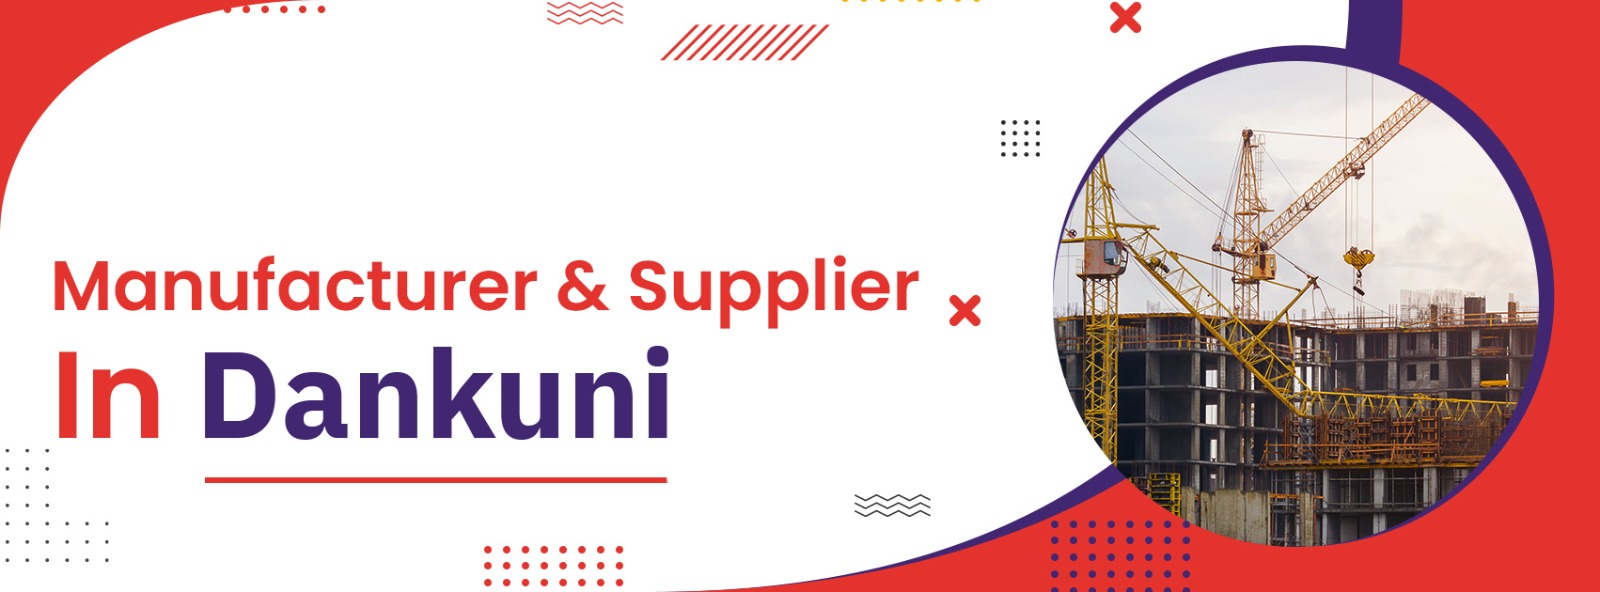 Scaffolding Mnaufacturer & Supplier In Dankuni